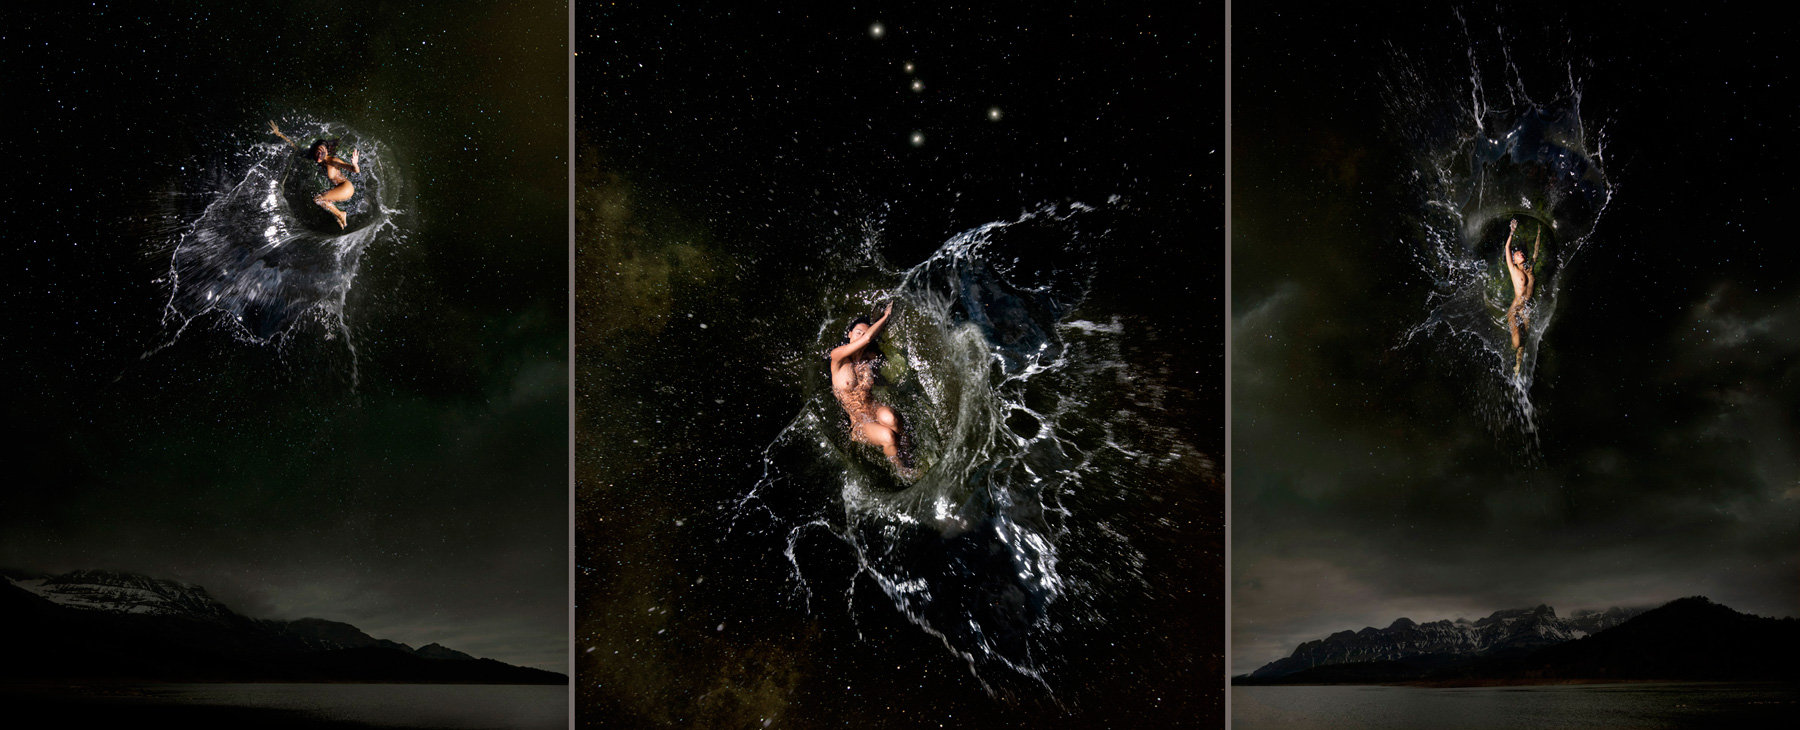 EUFONÍA de la Constelación de CANCER. Fotografía digital nocturna y acuática. Configuración y retoque digitales